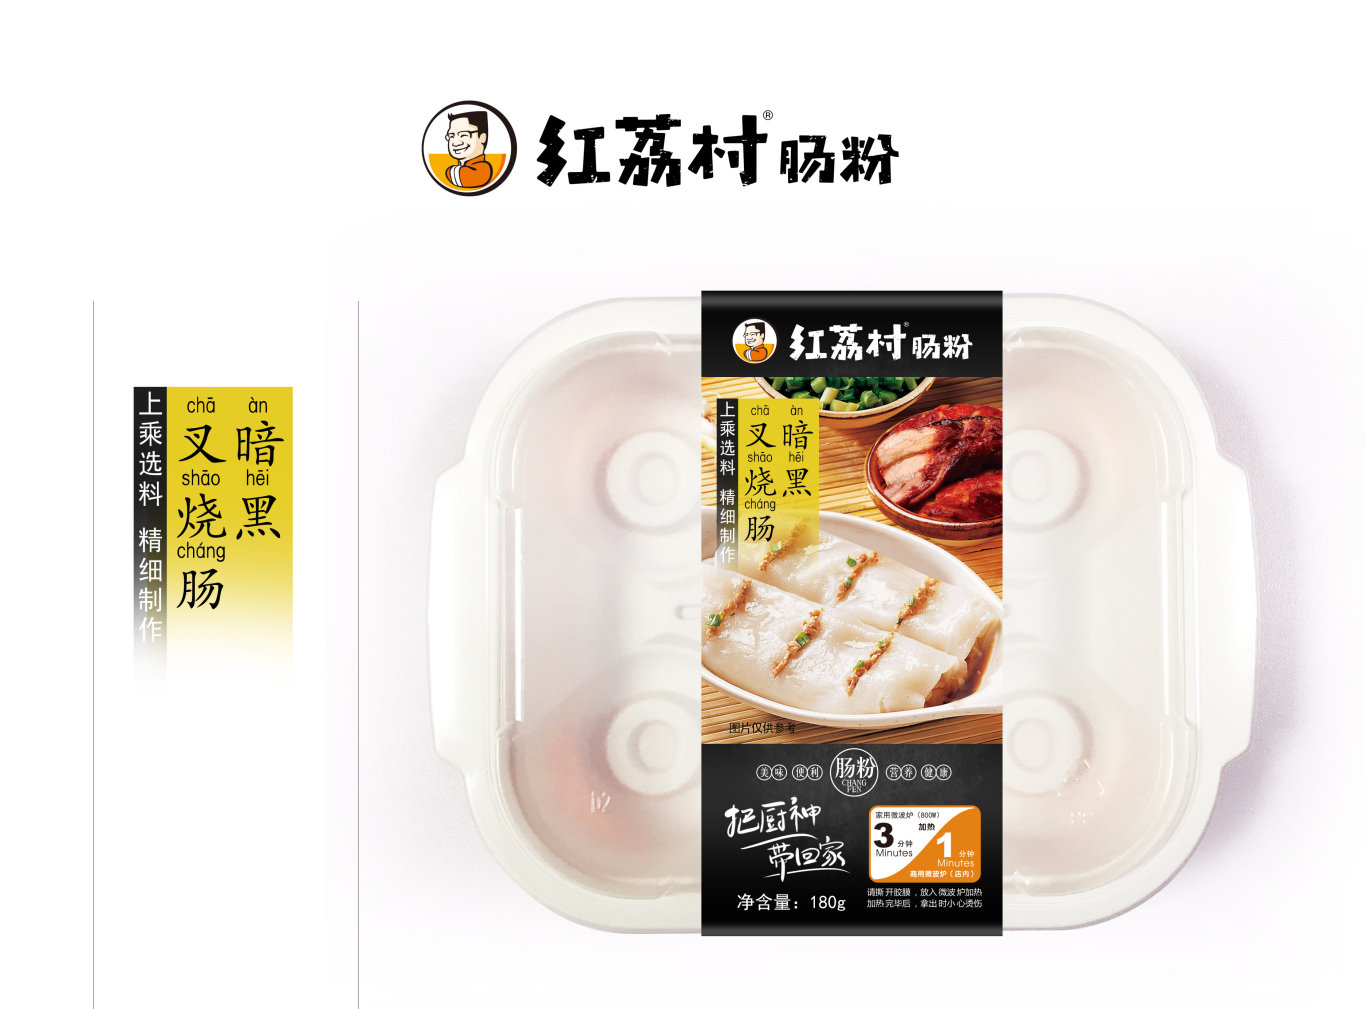 红荔村肠粉 餐饮系列产品包装图0